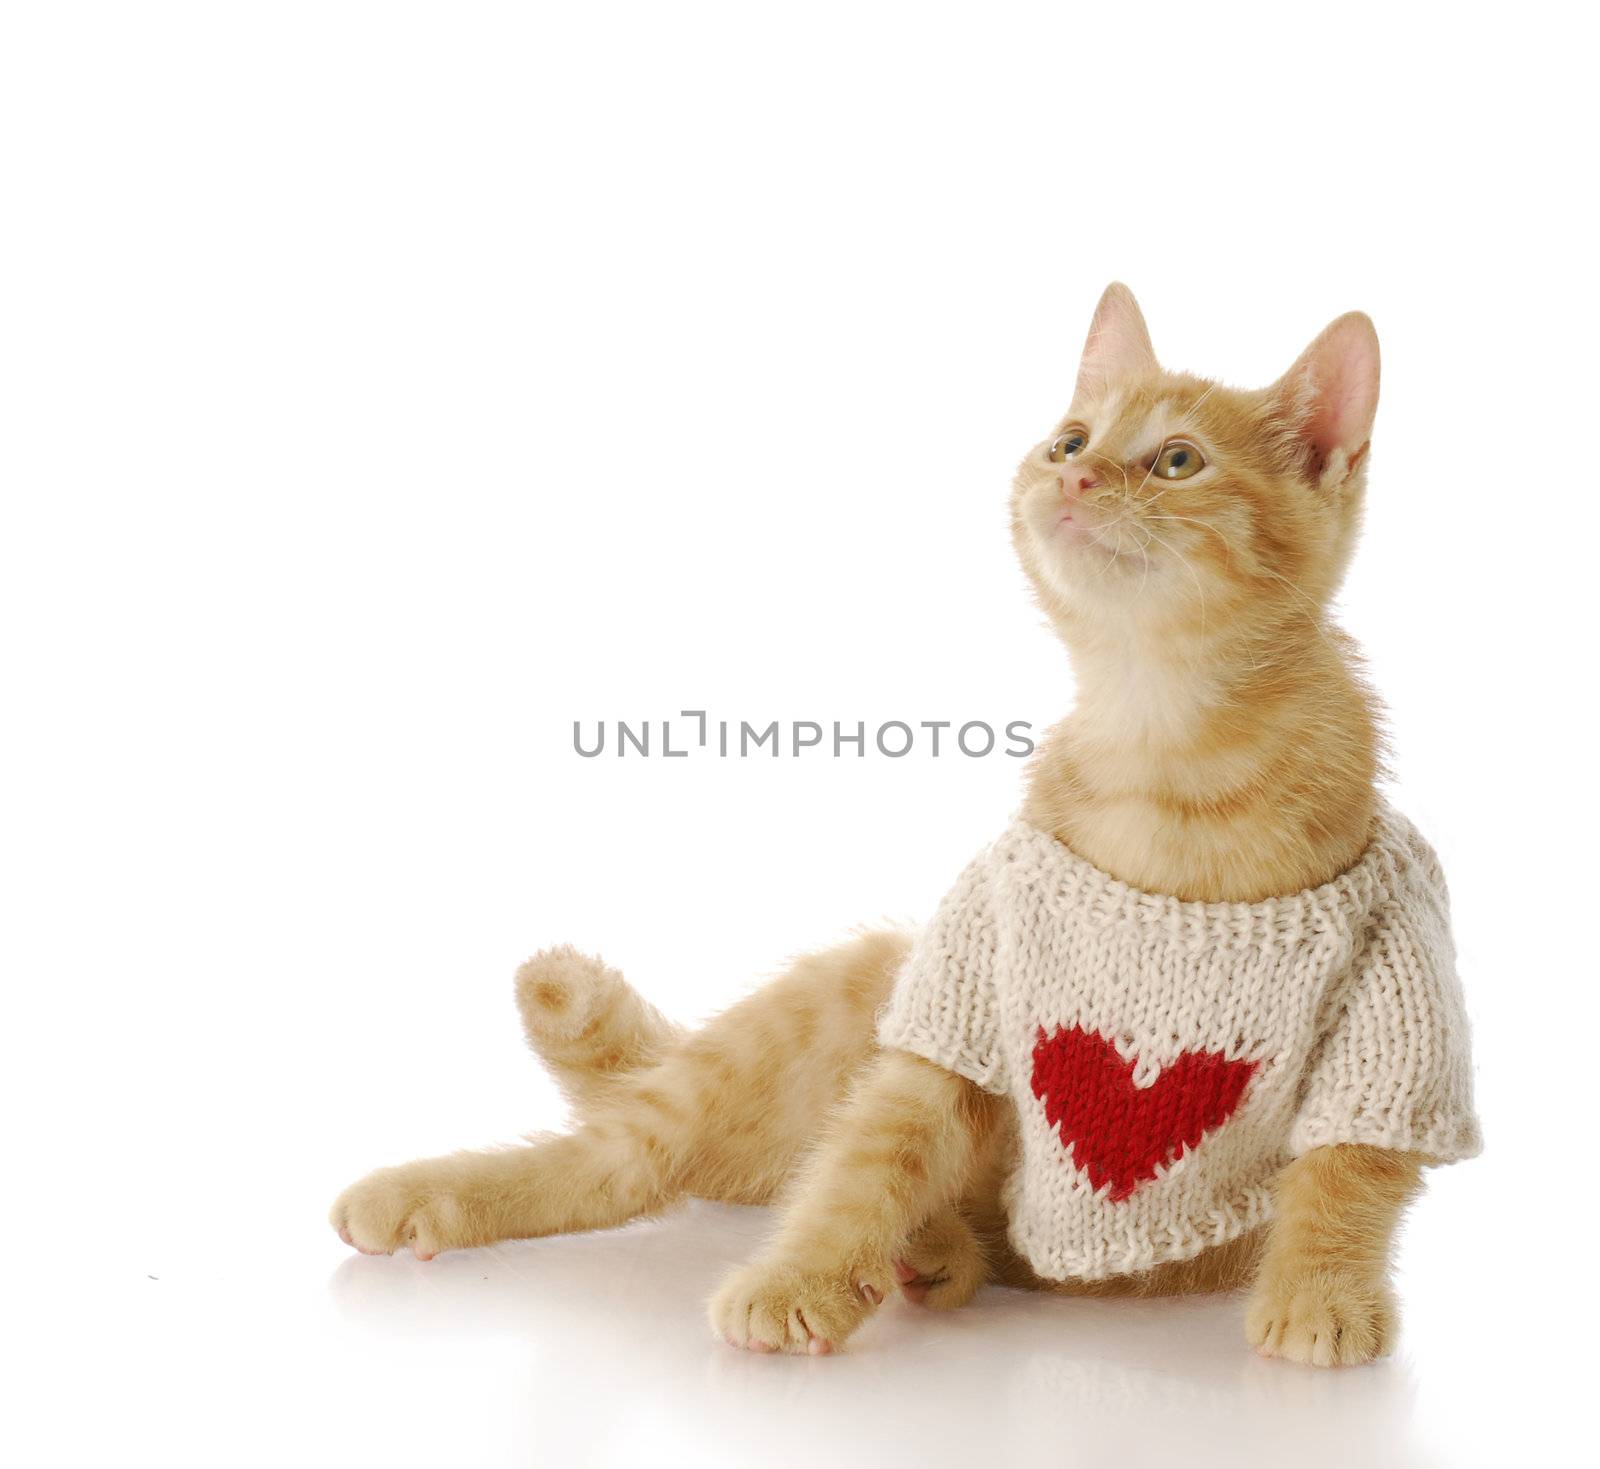 adorable ten week old kitten wearing sweater with heart on it